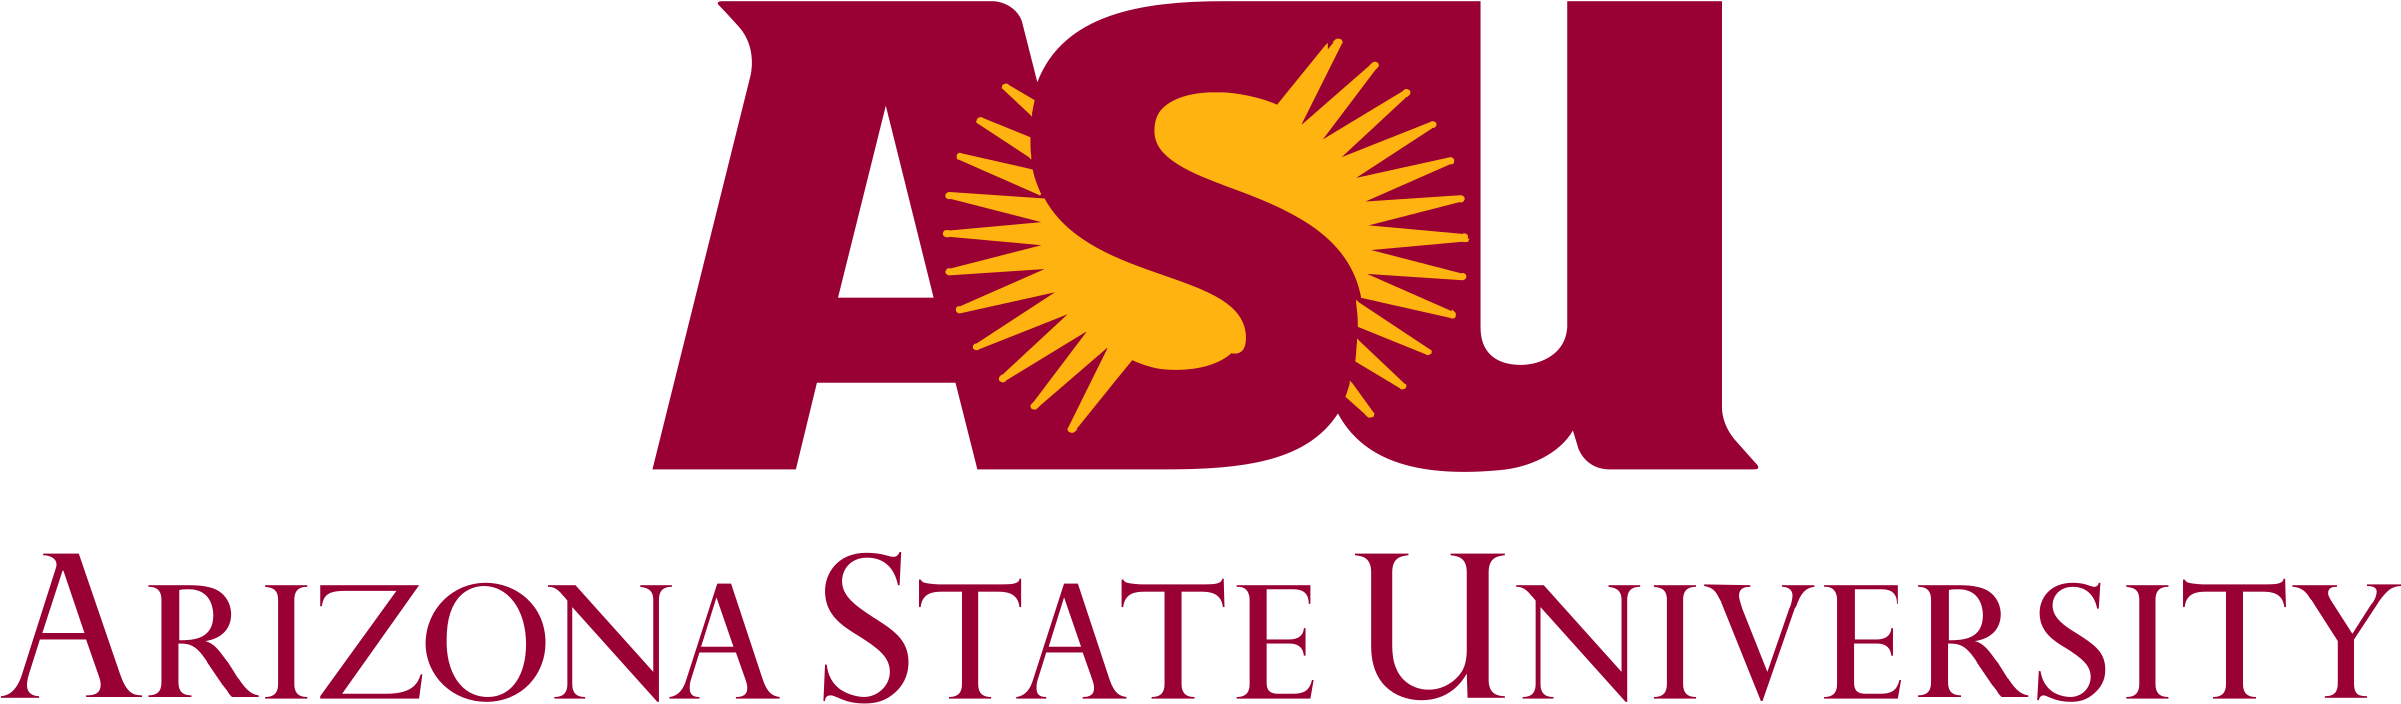 State University Logo Png - Arizona State University Tempe Logo (2400x714), Png Download